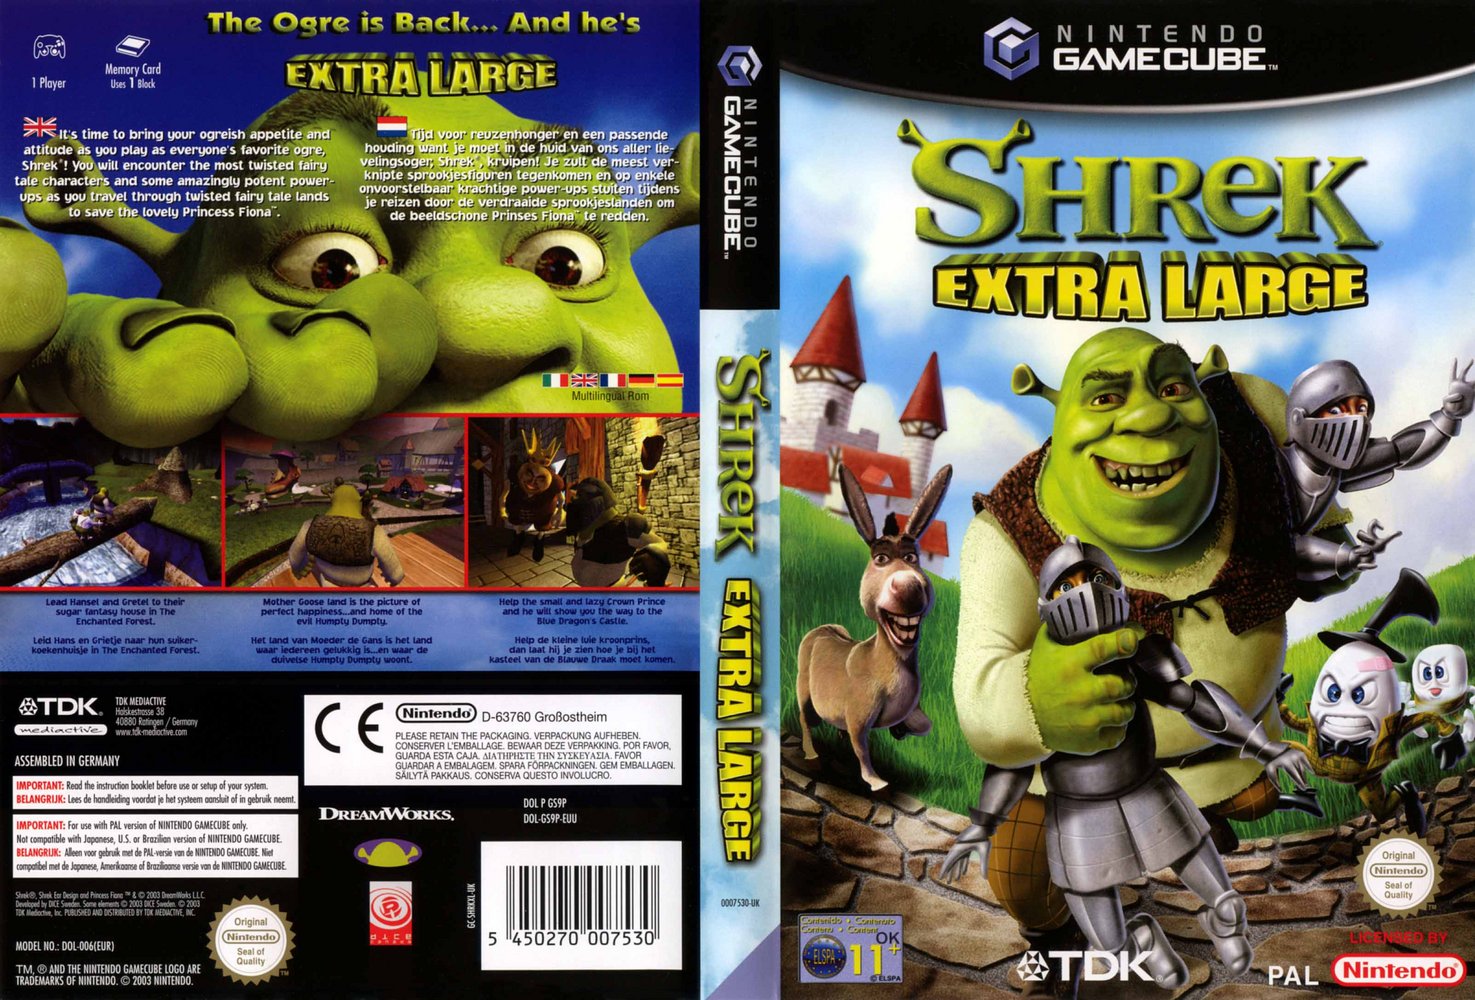 Shrek 2 free instals